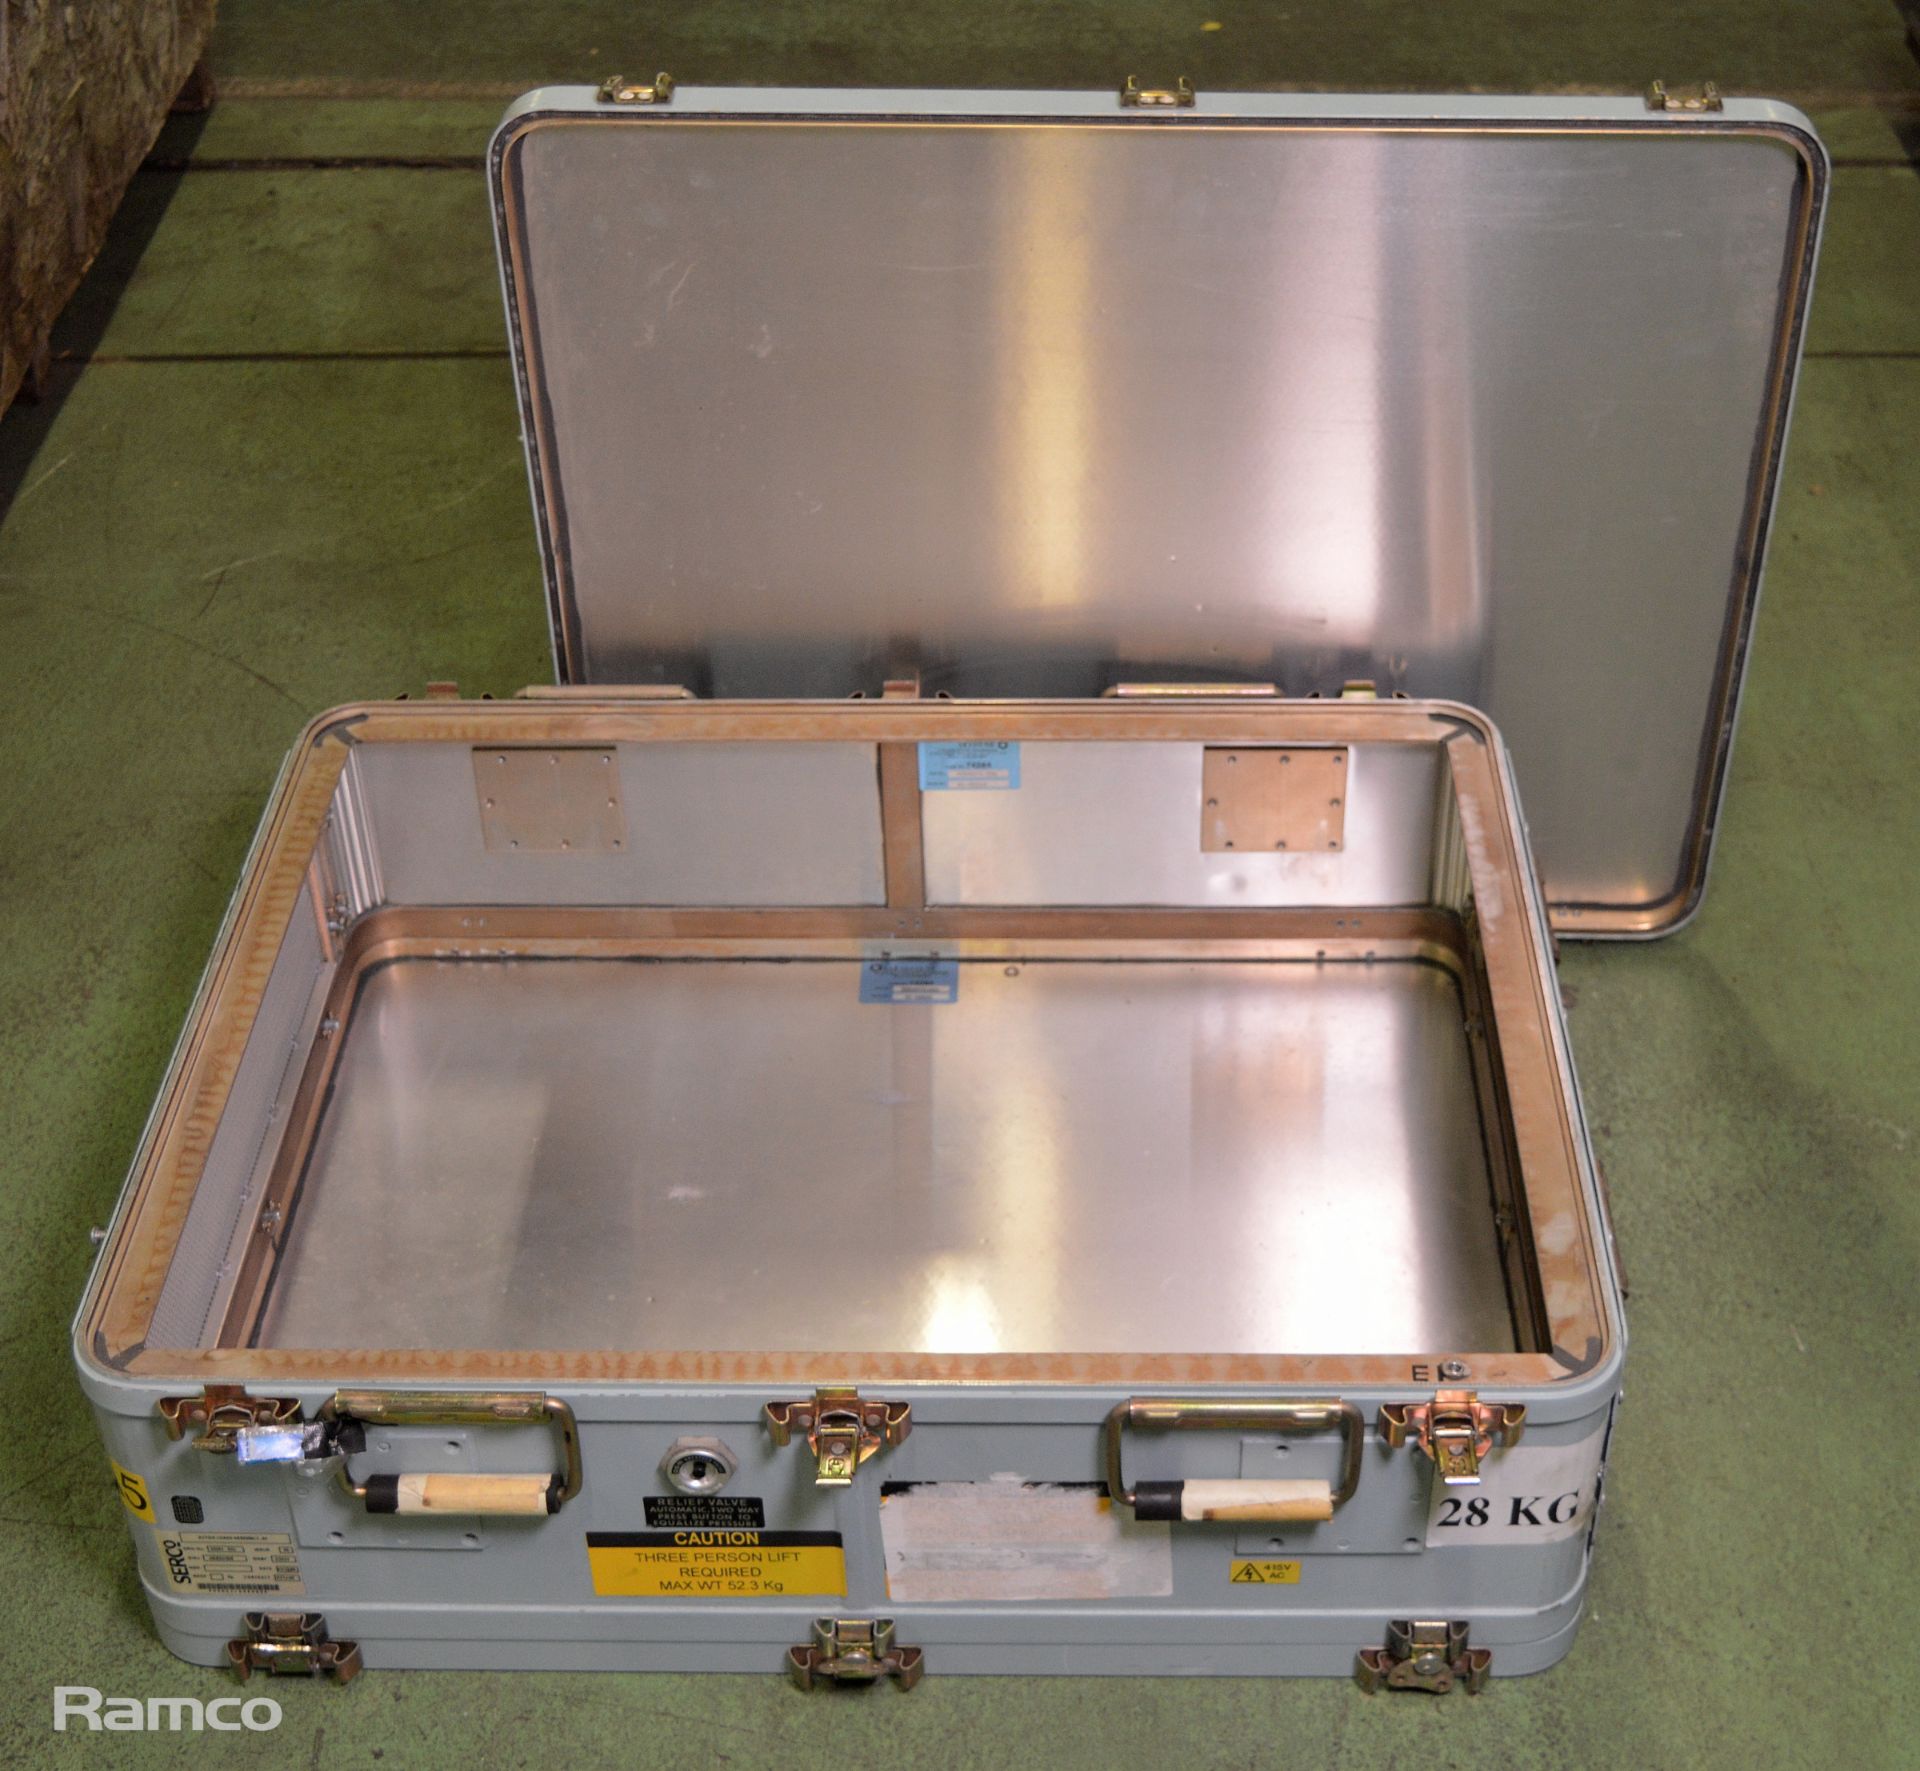 Aluminium heavy duty carry case - Image 2 of 3